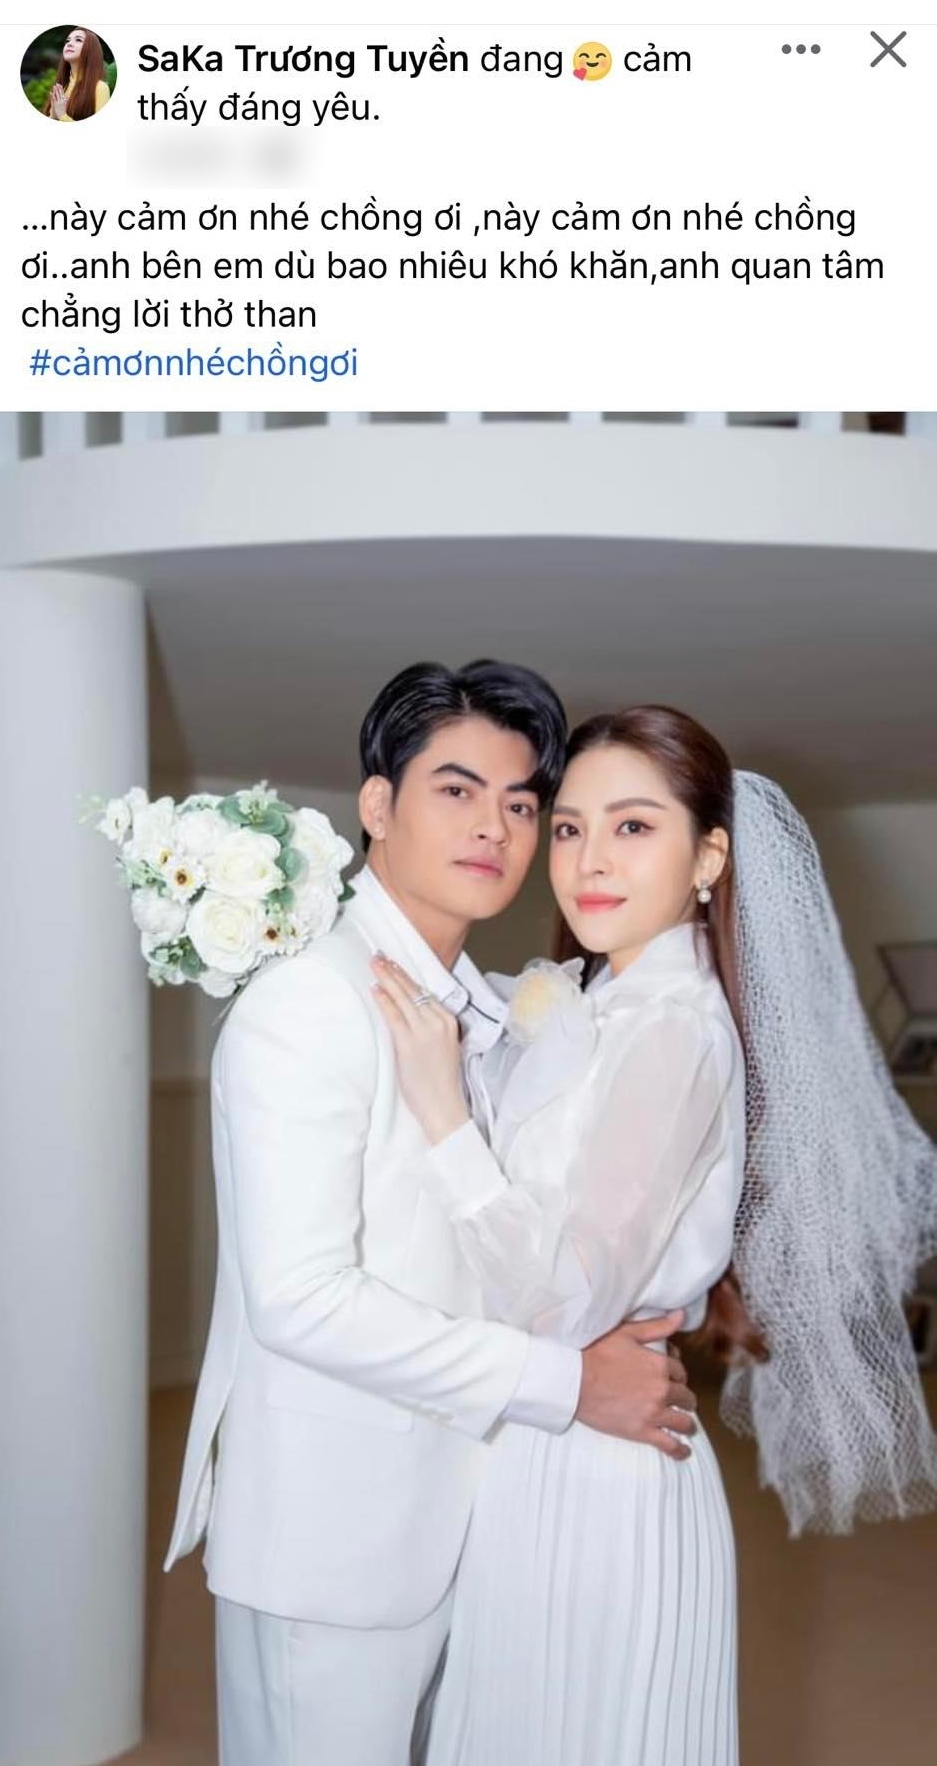 Saka Trương Tuyền kết hôn sau 2 năm ly hôn với Khưu Huy Vũ